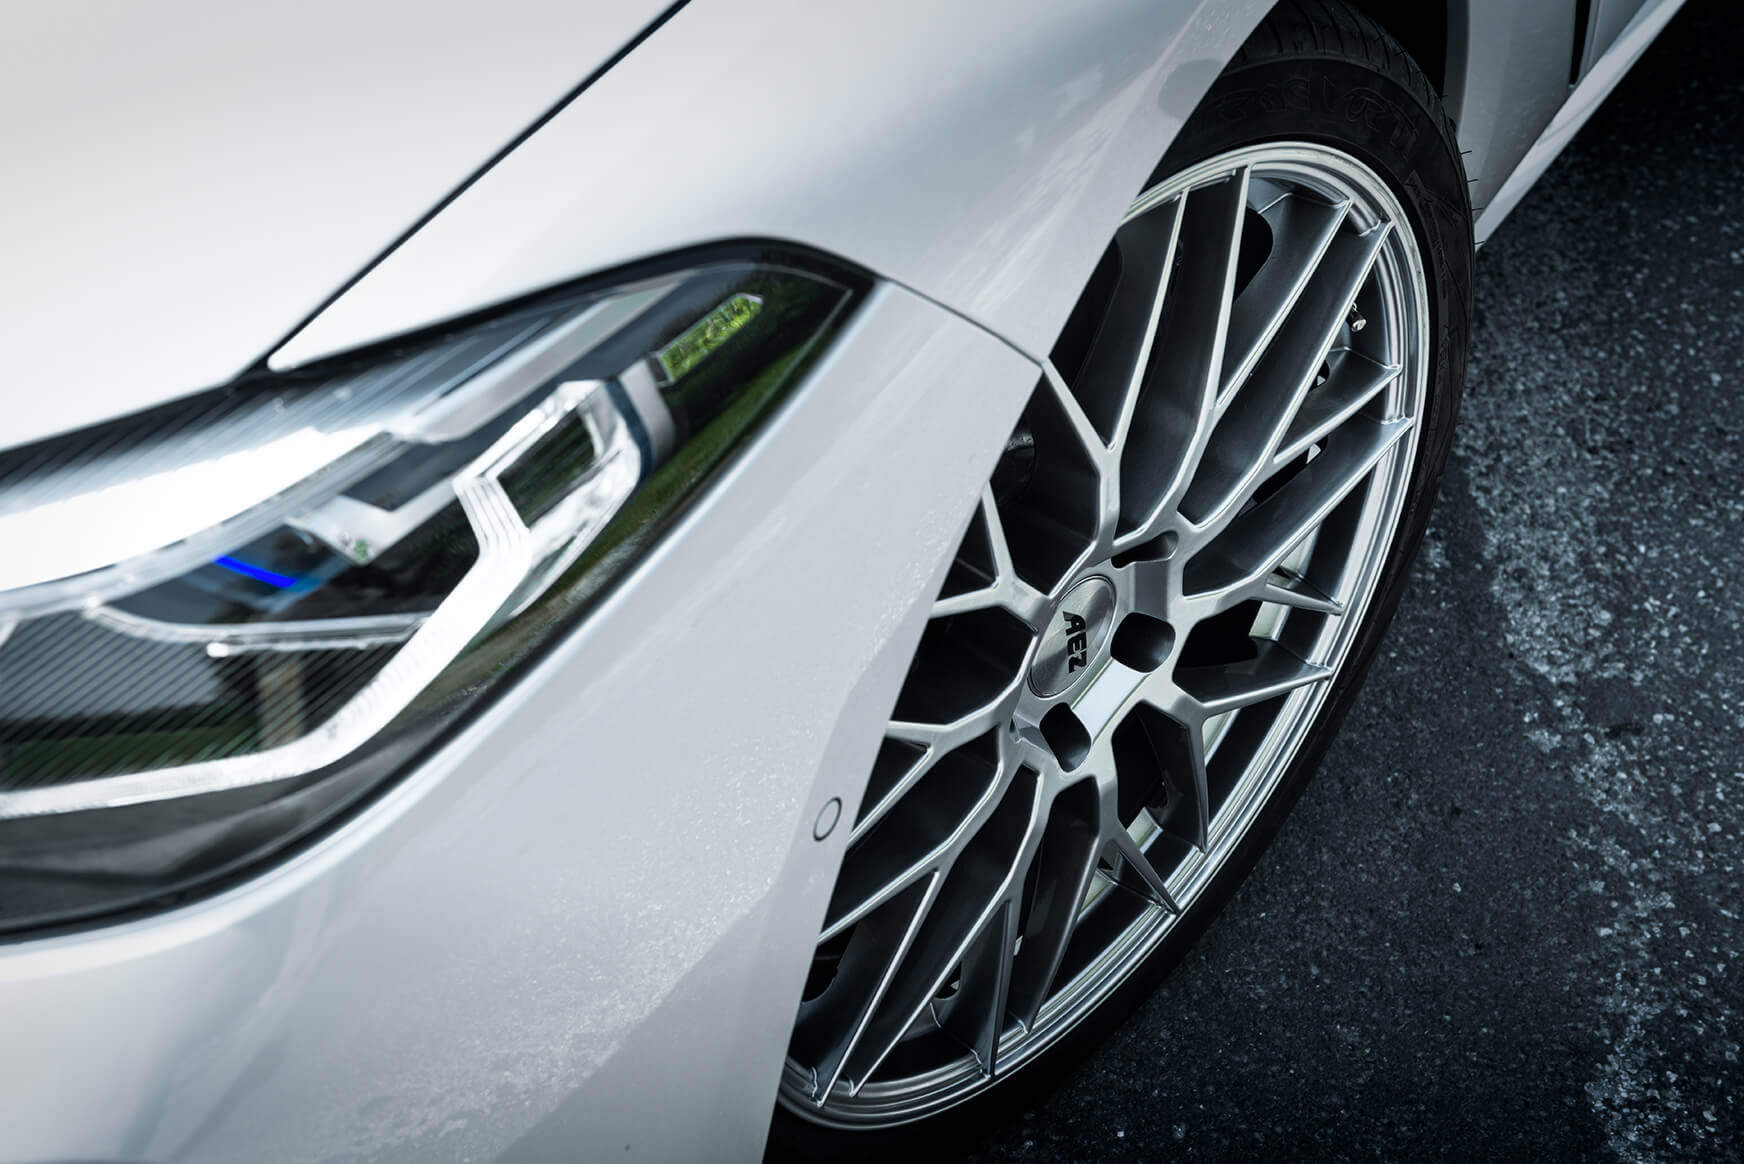 BMW 8er Coupé on AEZ Crest detail